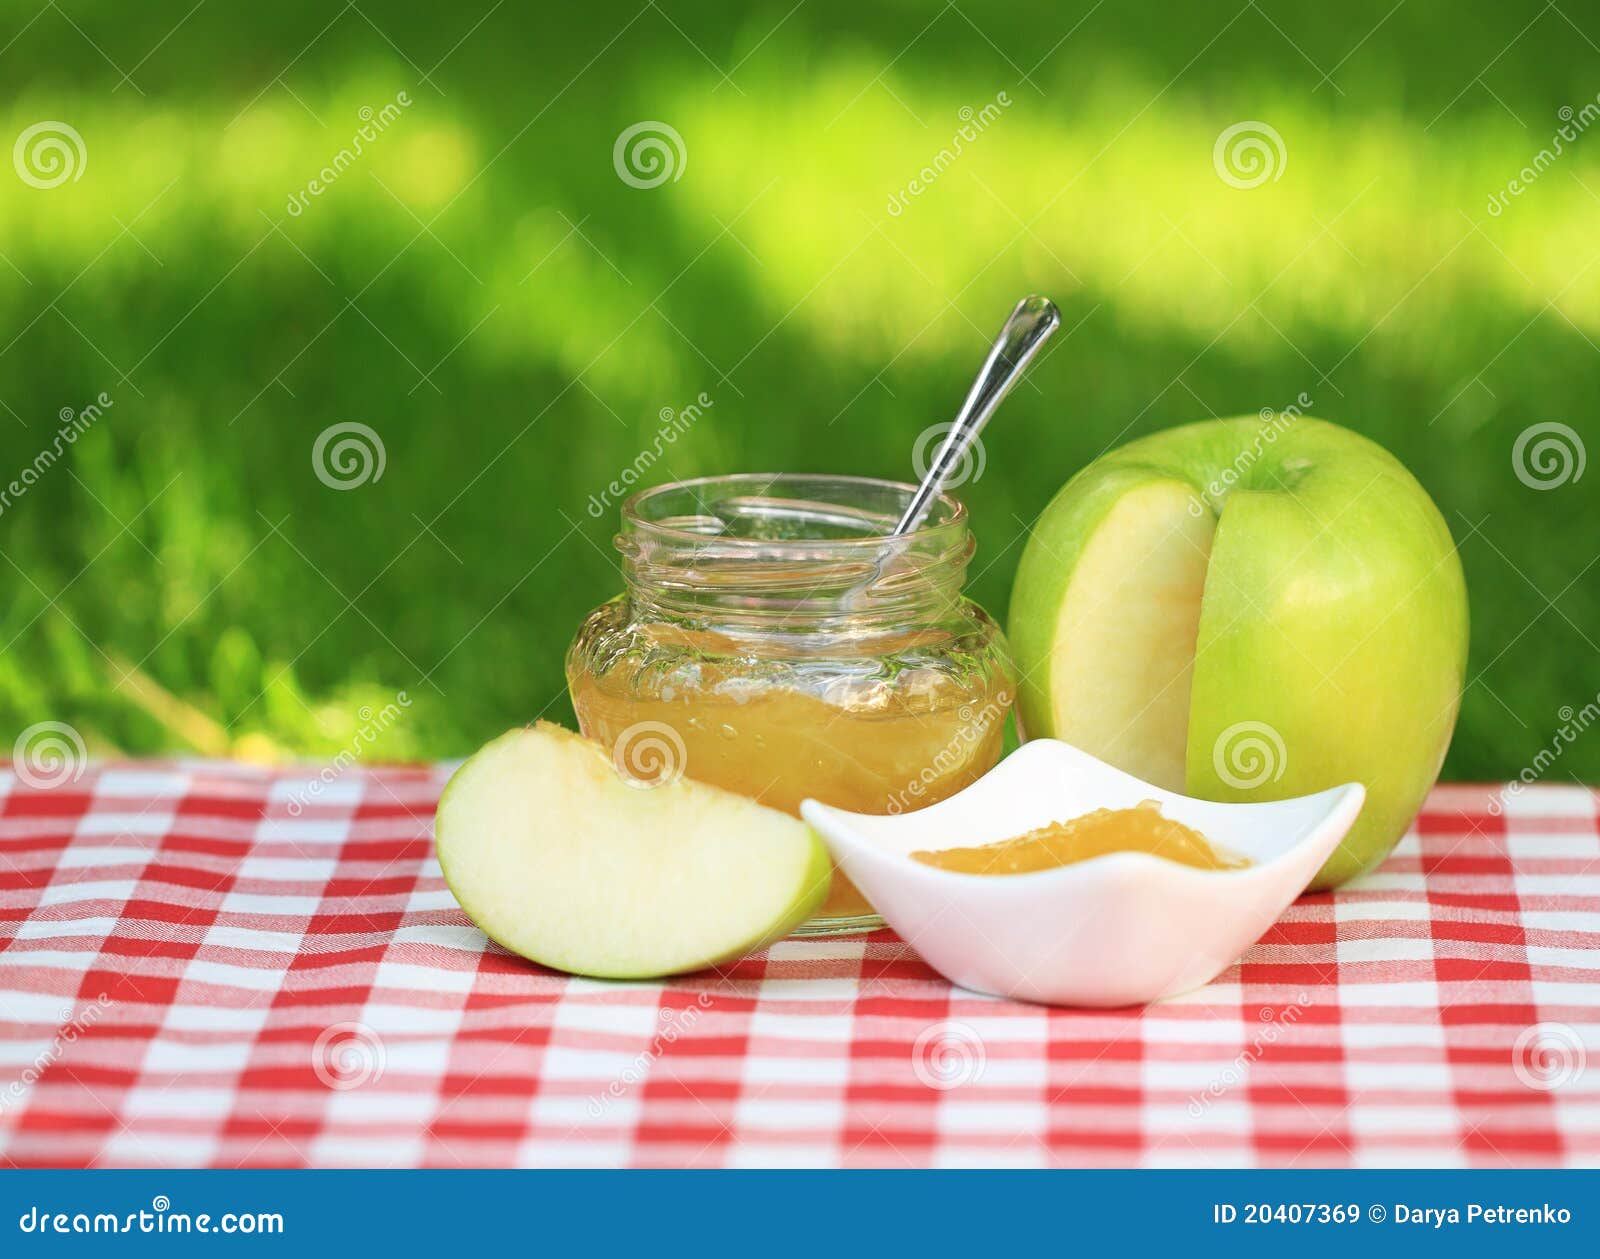 自制苹果果酱的做法_自制苹果果酱怎么做_自制苹果果酱的家常做法_一包烟【心食谱】